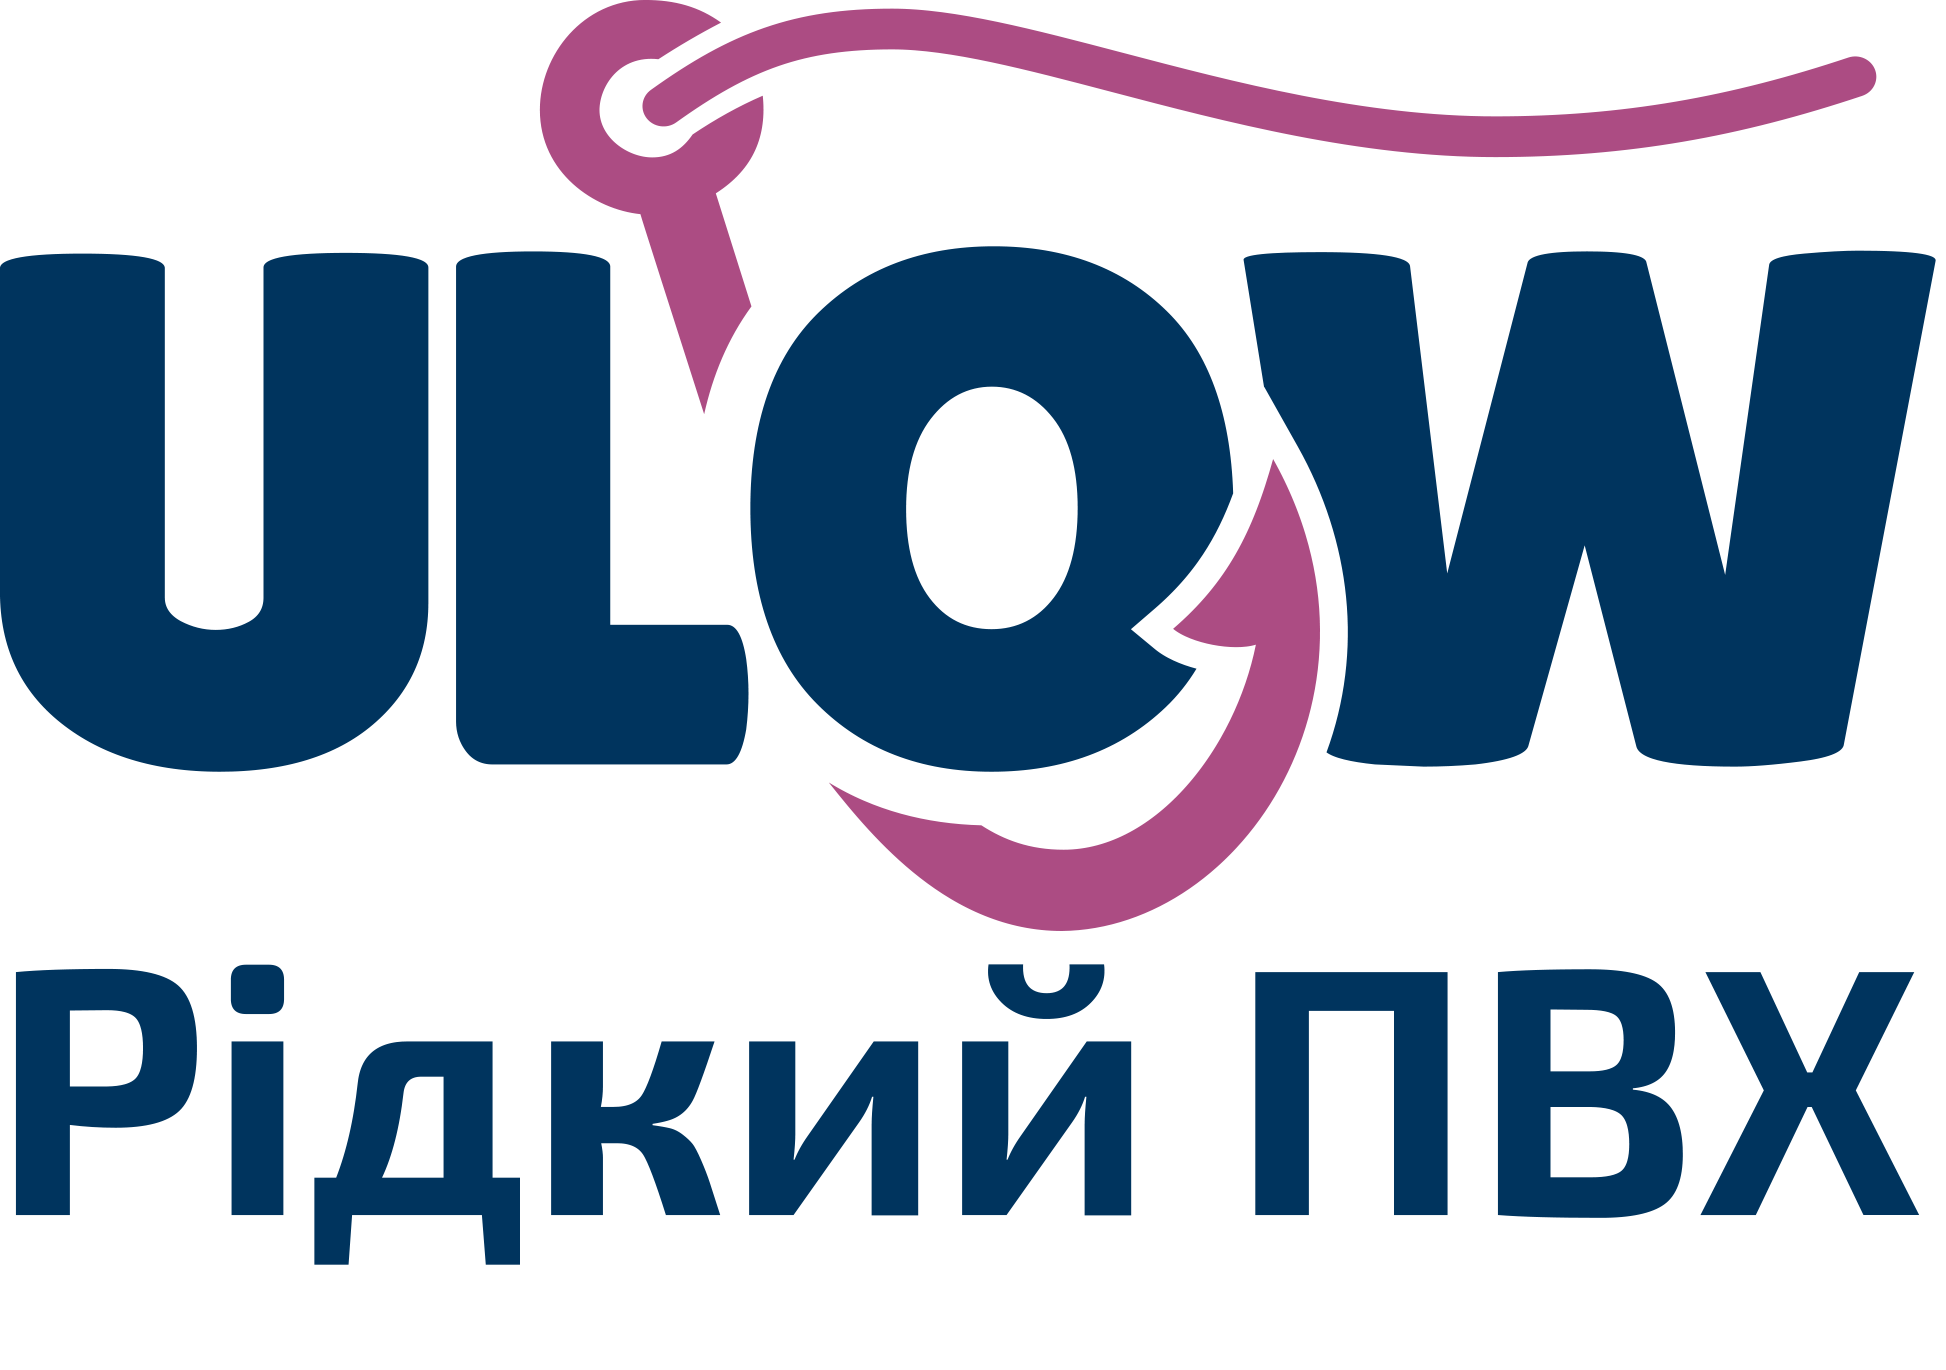 ULOW